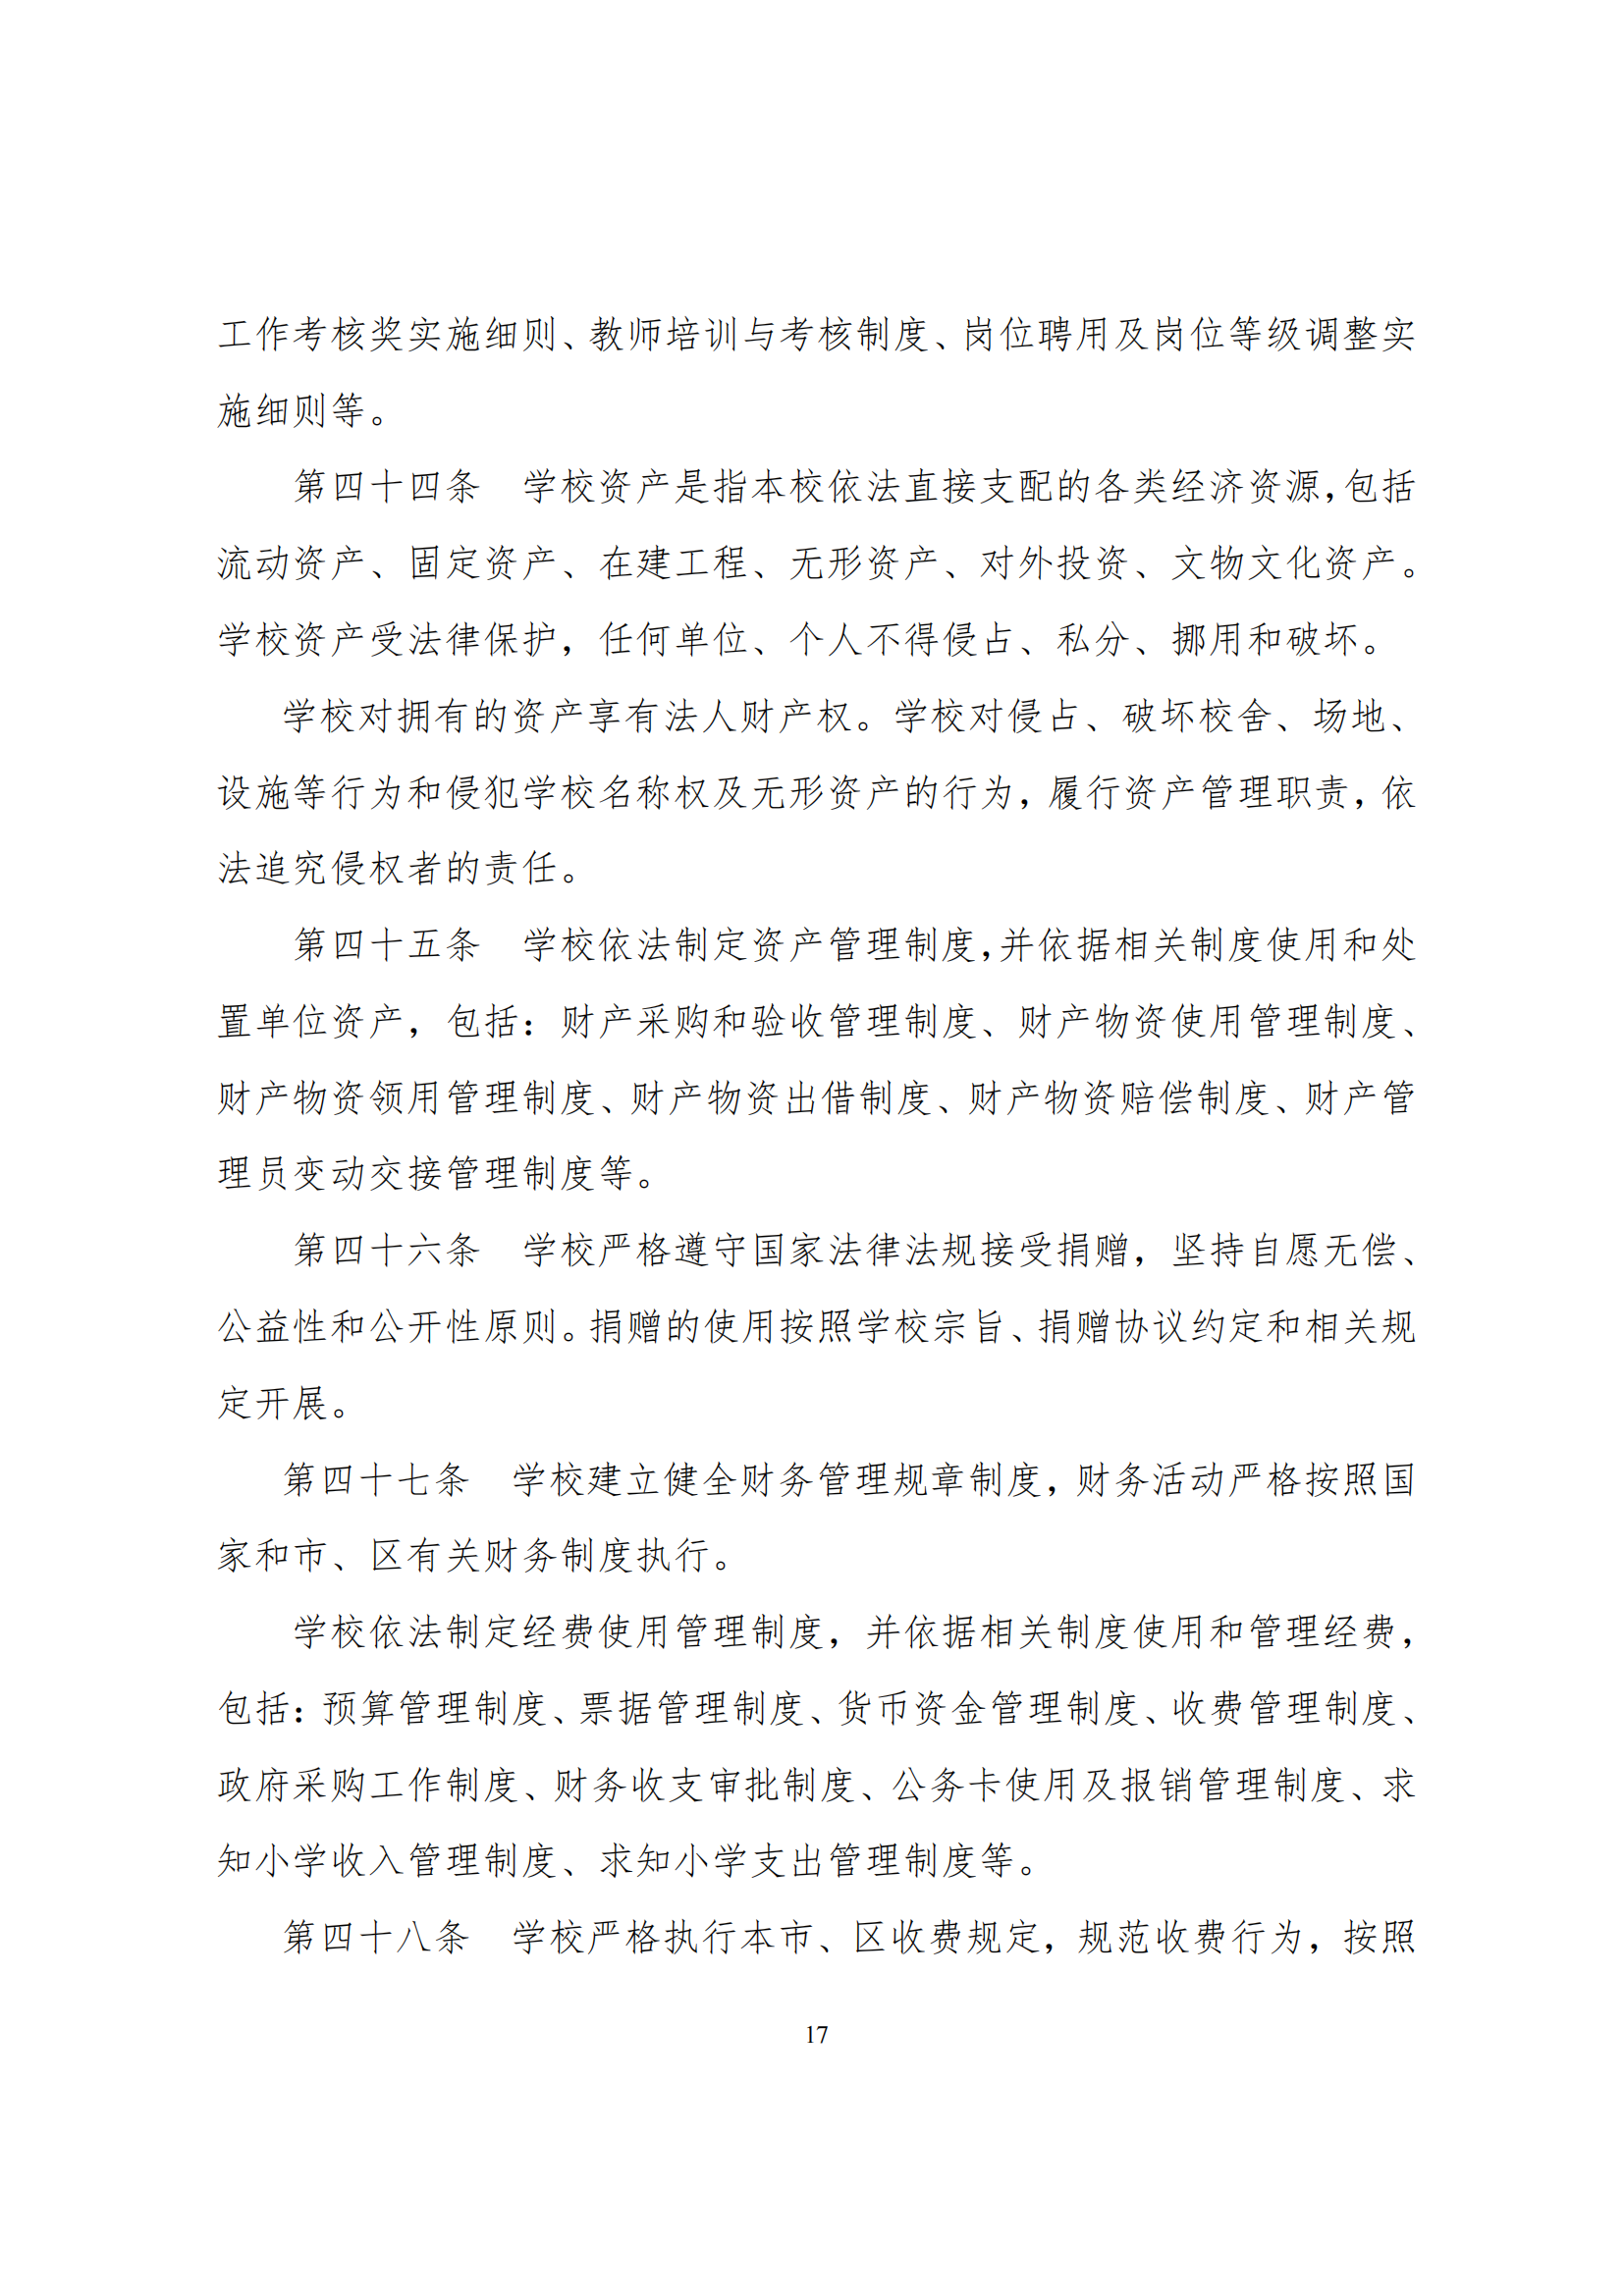 上海市徐汇区求知小学学校章程（提交稿）_16.png